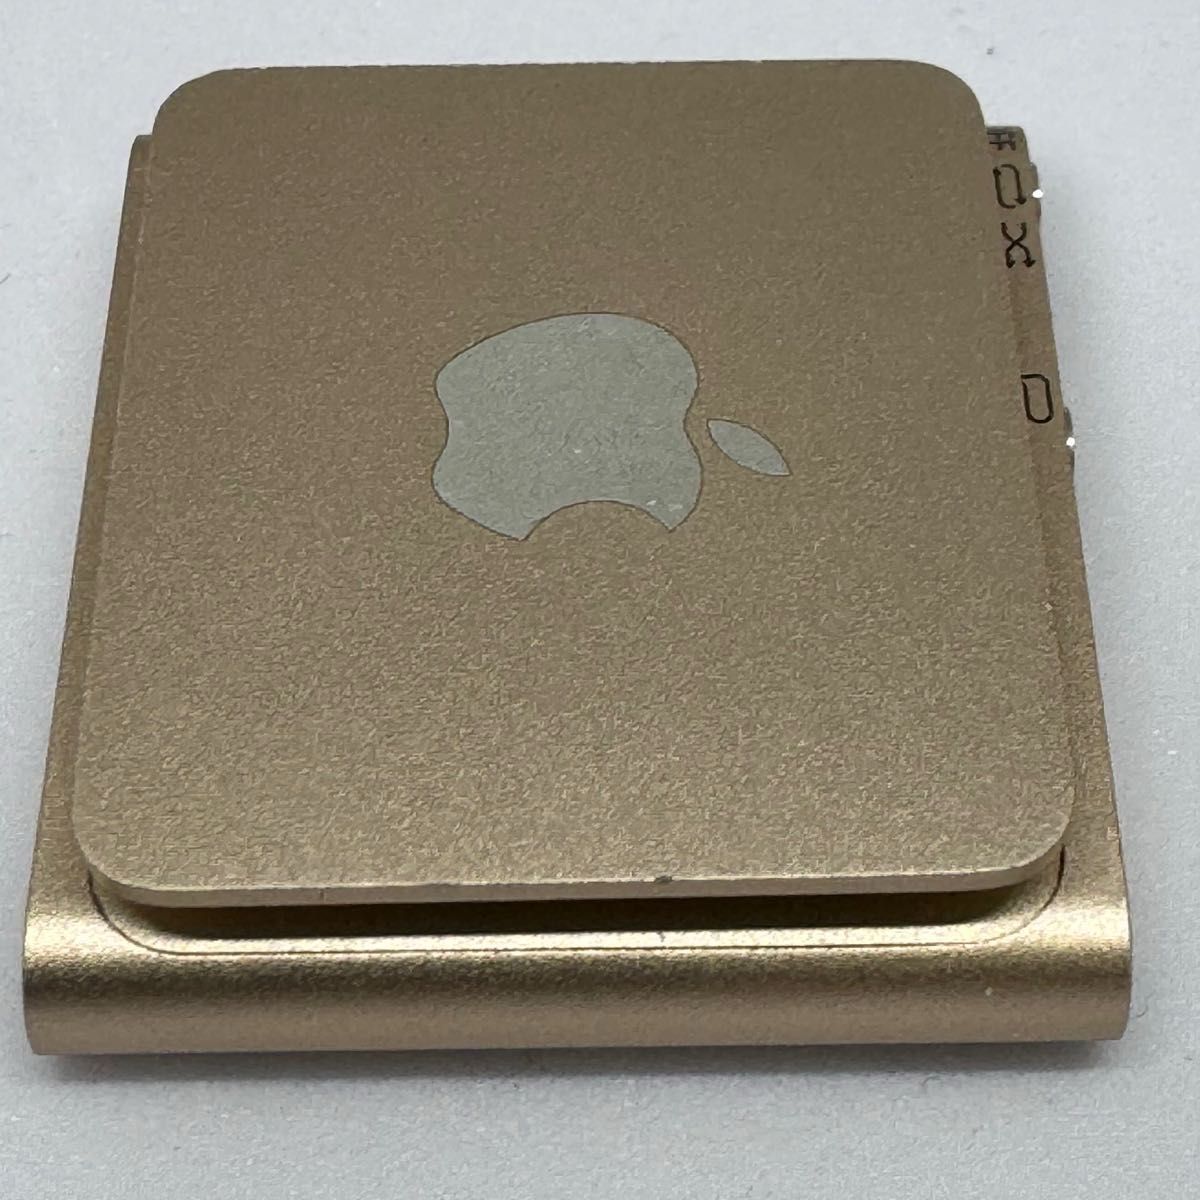 【初期化済】【おまけ付き】Apple iPod shuffle 第4世代 A1373 MKM92J/A 2GB ゴールド